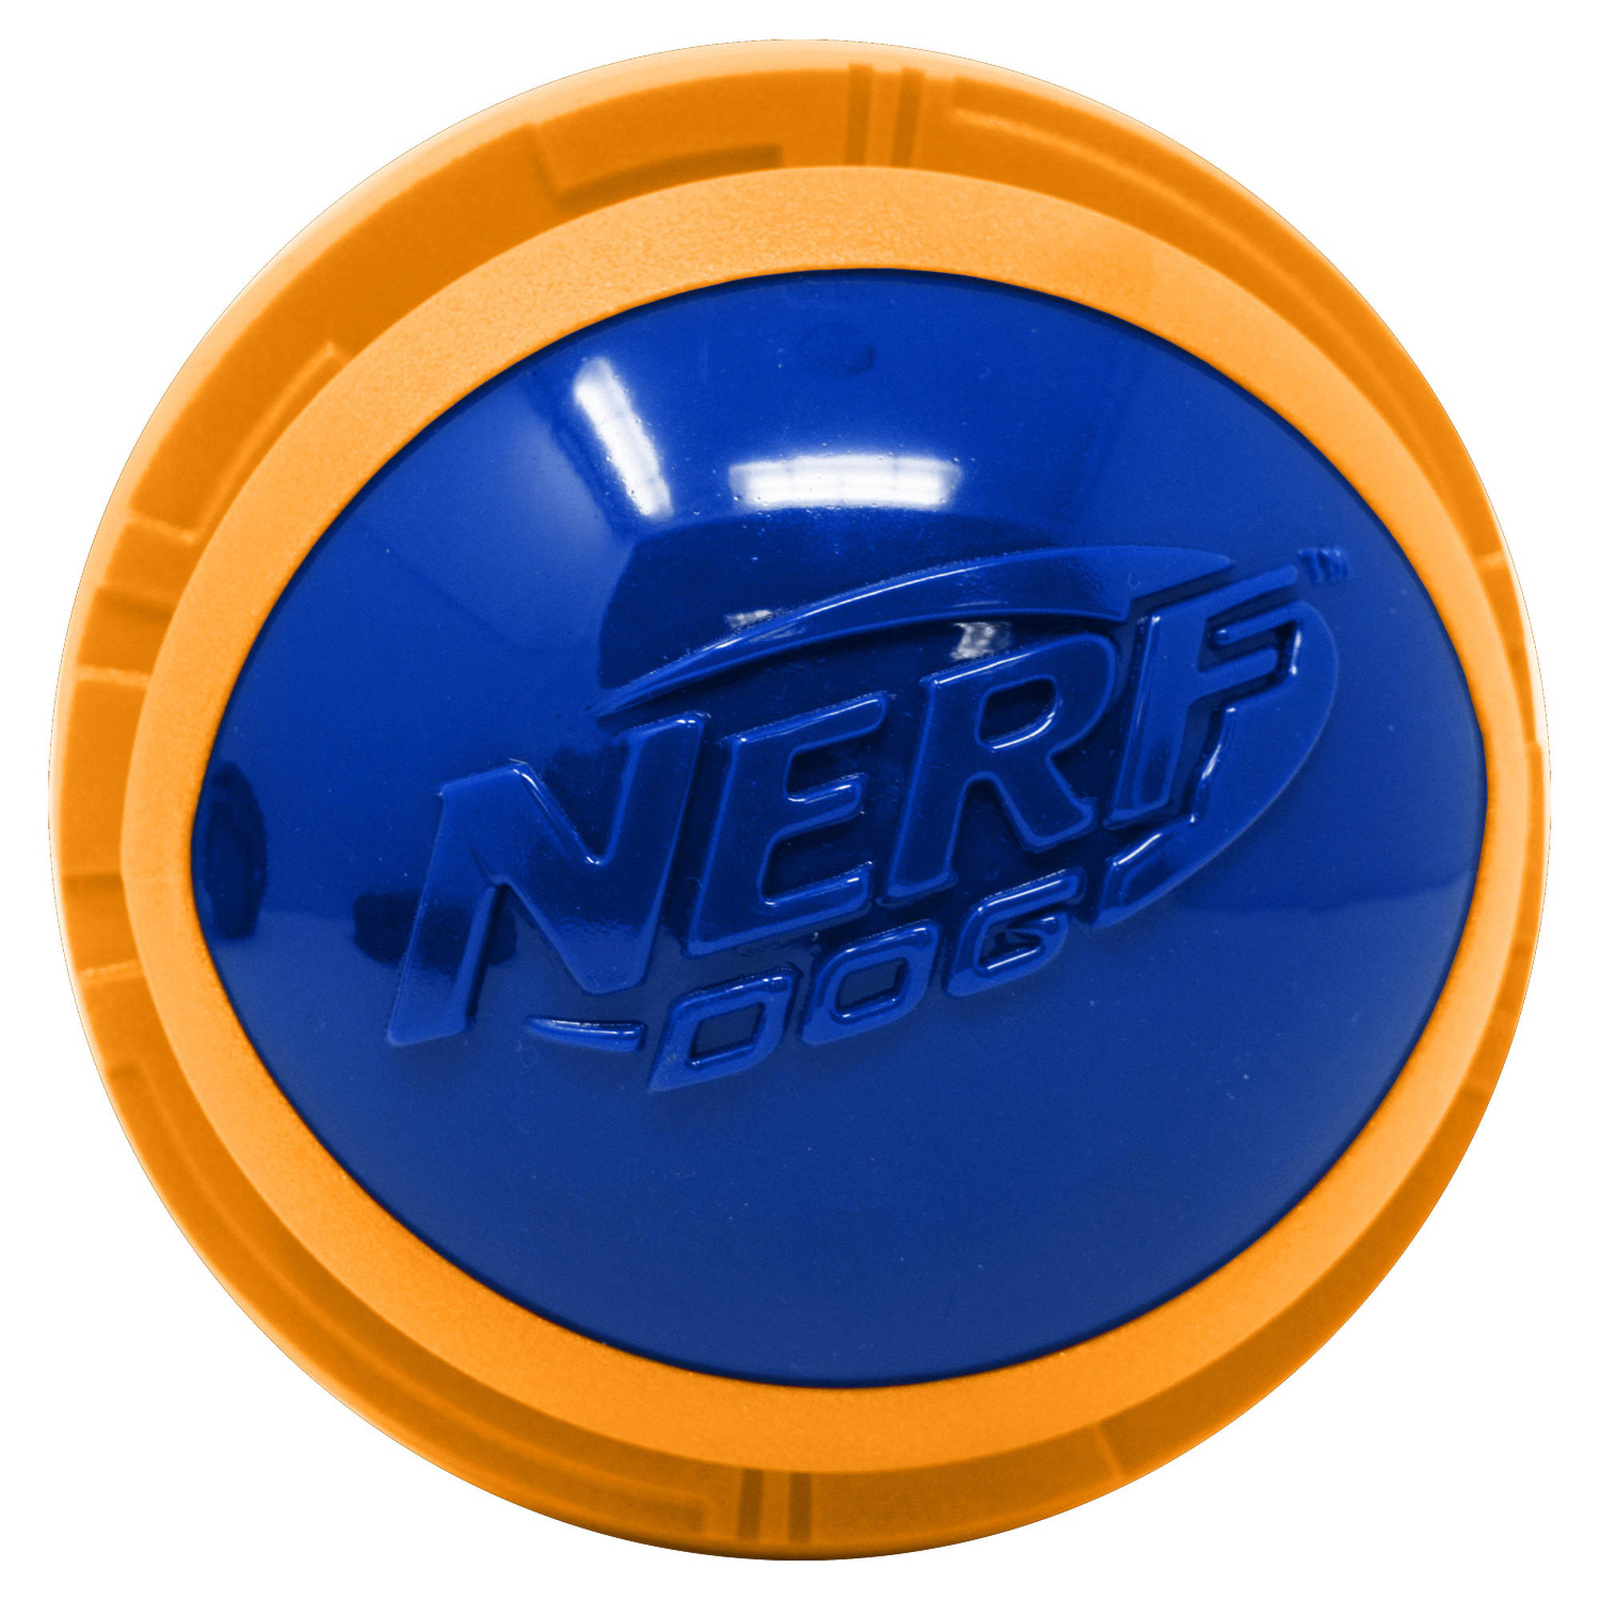 Nerf Nerf мяч из вспененной резины и термопластичной резины, 10 см (серия Мегатон), (синий/оранжевый) (380 г) nerf nerf снаряд из вспененной резины и нейлона 30 см серия мегатон синий зеленый 245 г